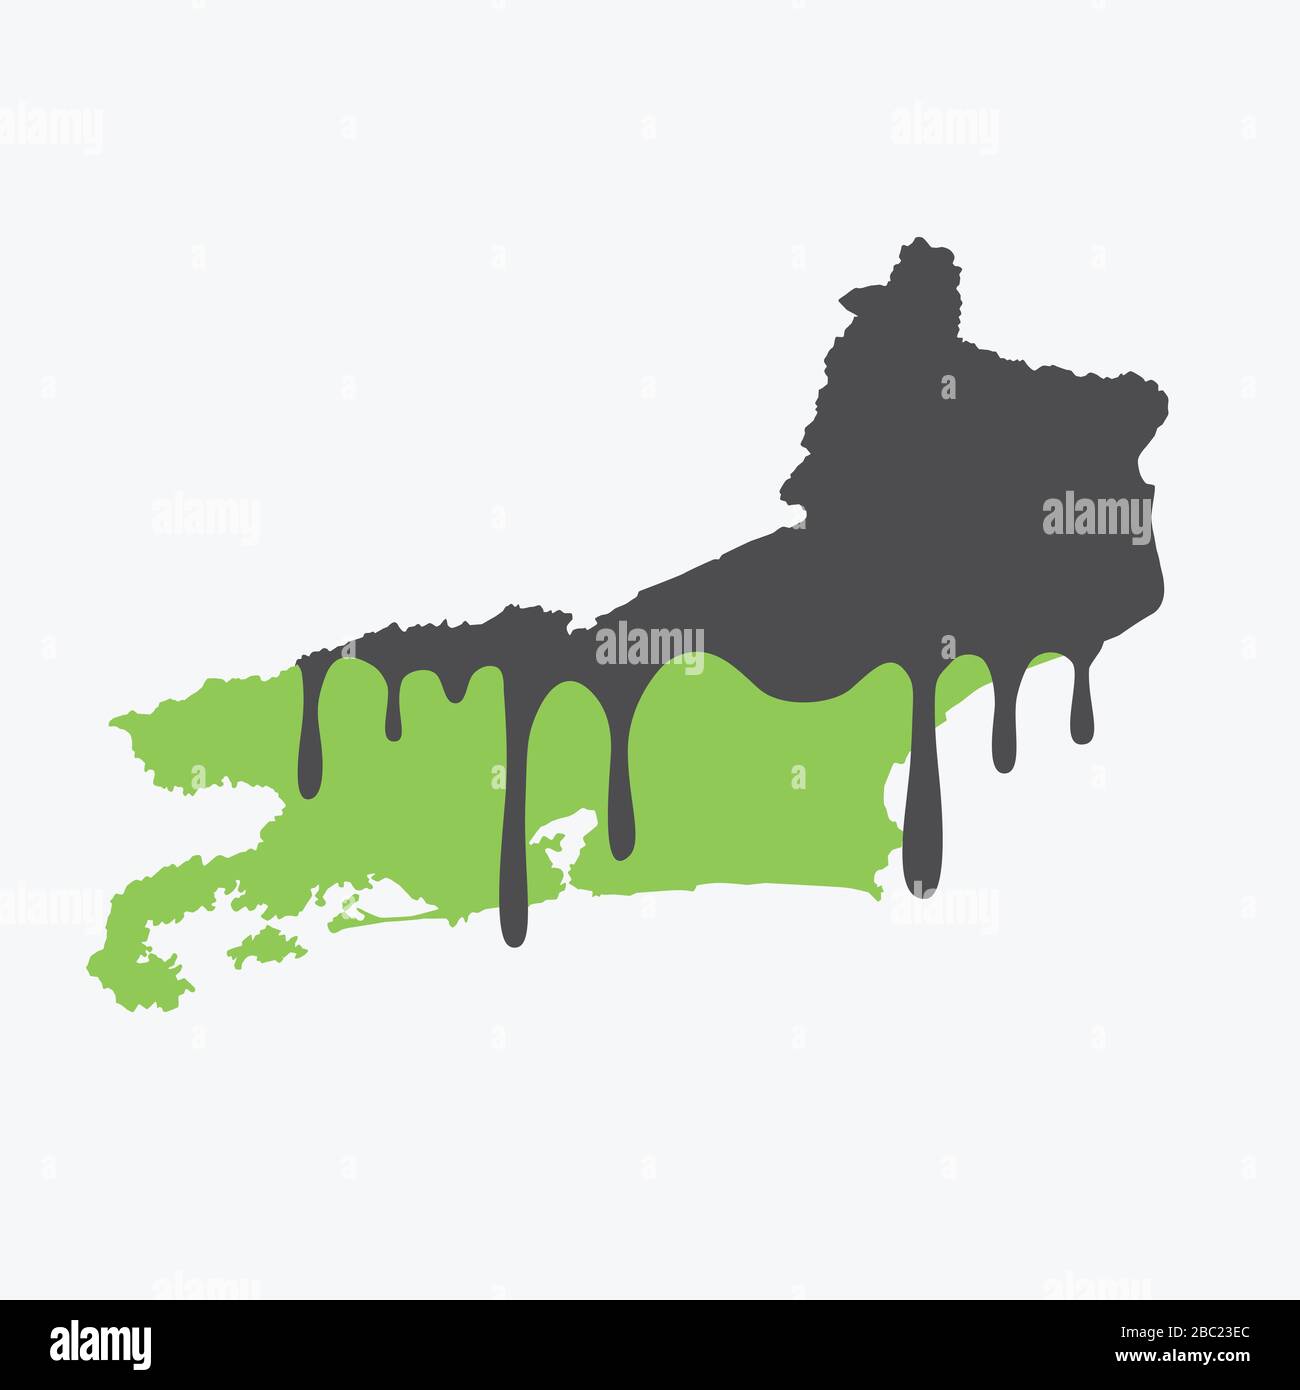 Karte von Rio de Janeiro mit Öl bedeckt. Ölverschmutzung im brasilianischen Bundesstaat. Konzeptionell. Stock Vektor